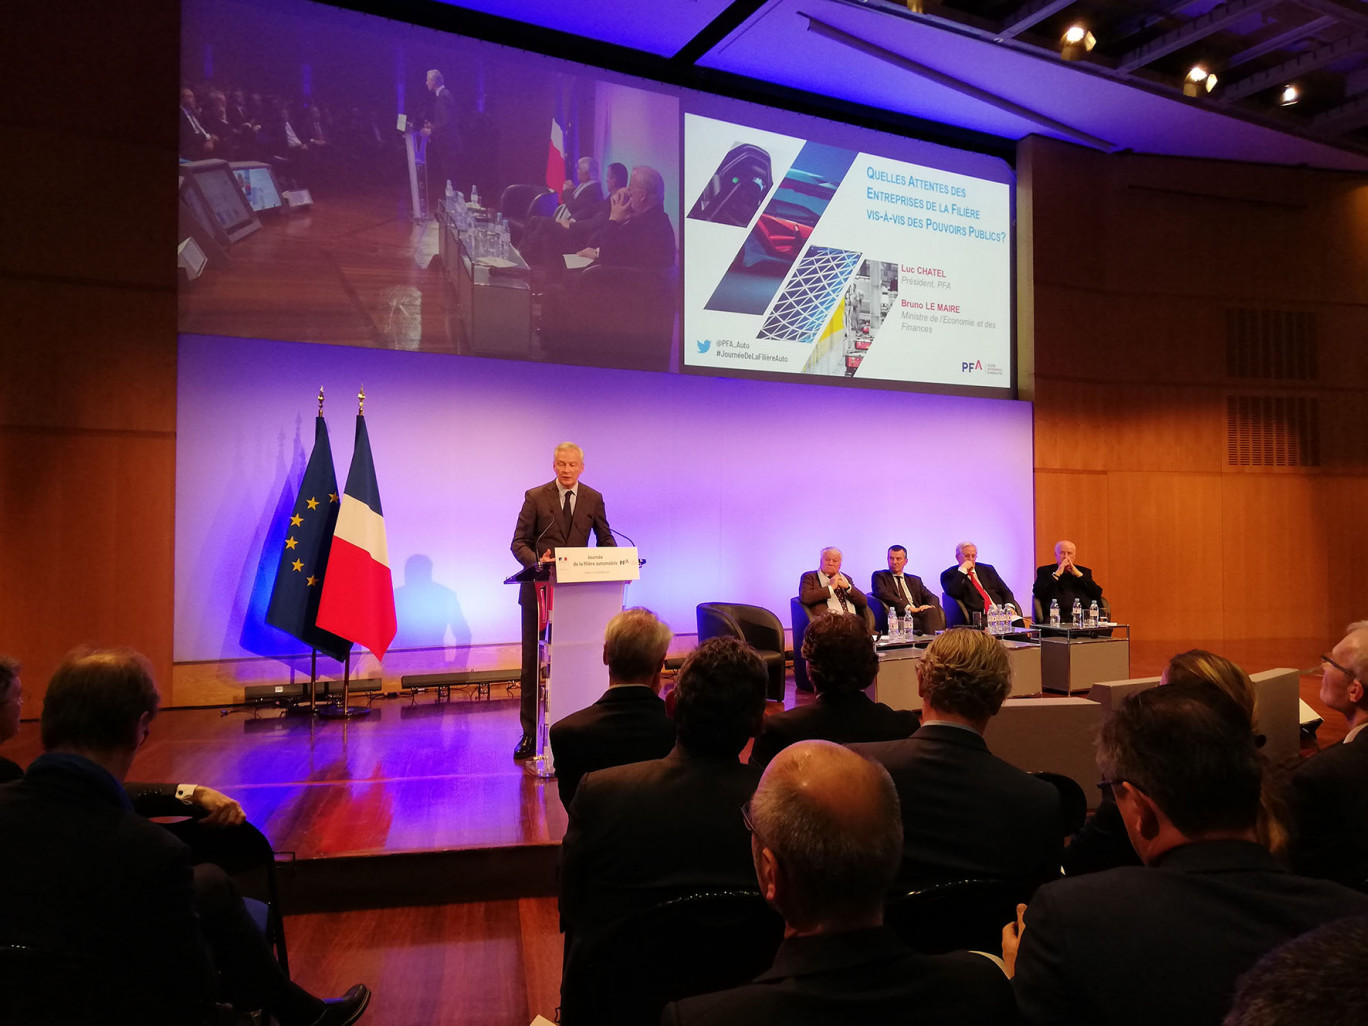 Le ministre de l’Économie, Bruno Le Maire, est intervenu au cours d'une journée de rencontres de la filière automobile, réunissant plusieurs centaines de PME à Bercy début décembre. 

